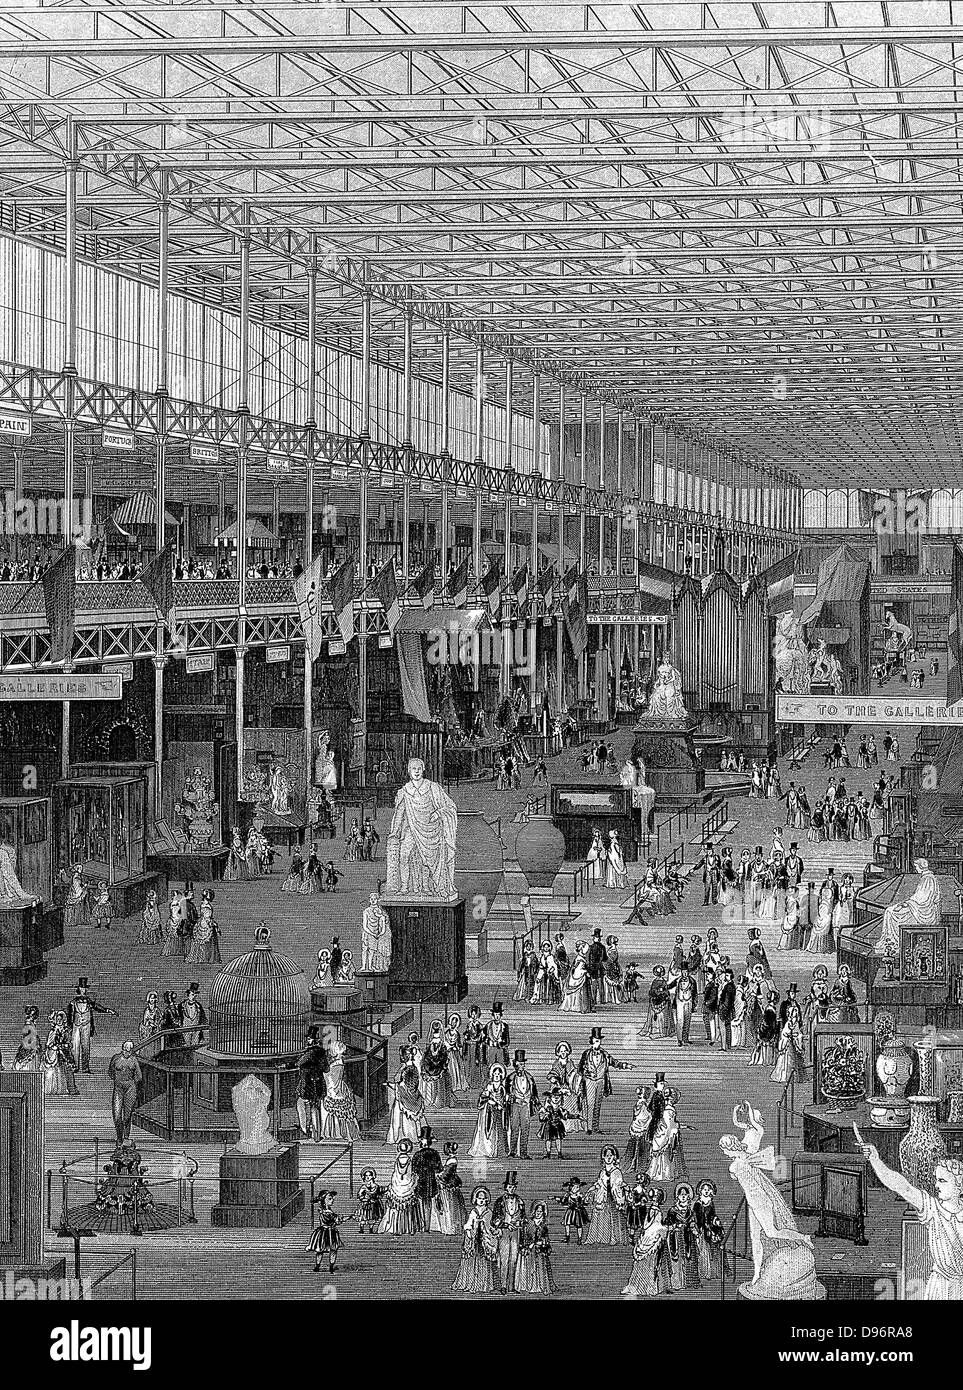 Grande exposition de 1851, Crystal Palace, Hyde Park, Londres. Vue de l'intérieur de l'avenue principale à l'Est, montrant des galeries soutenues par des colonnes de fer à l'augmentation de la crête et la raie de toit en verre. Gravure sur acier 1851. Banque D'Images